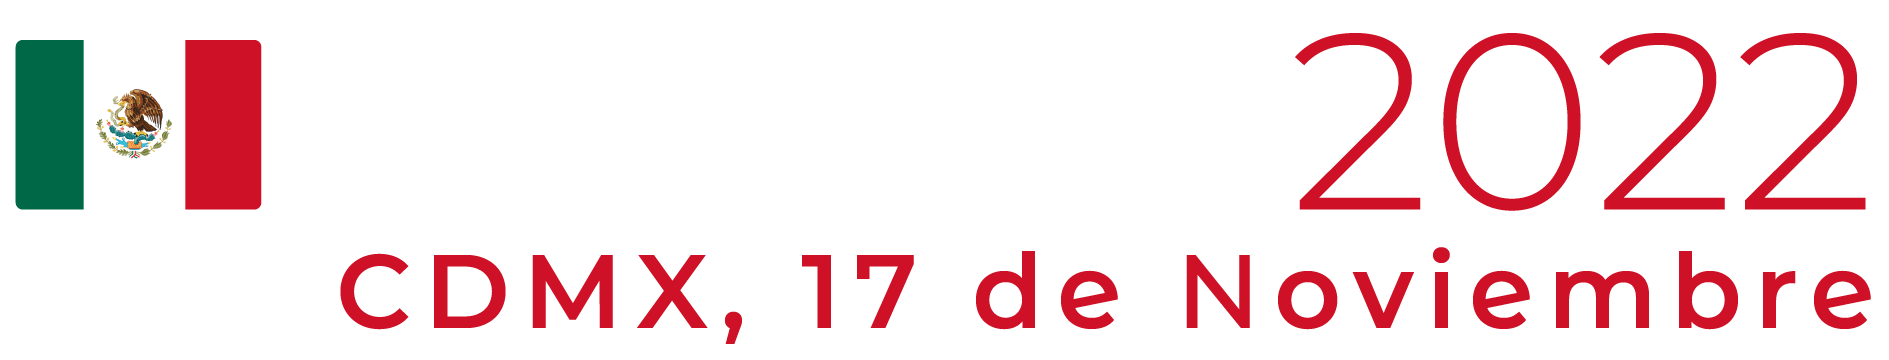 Mexico 2022 ES blanco